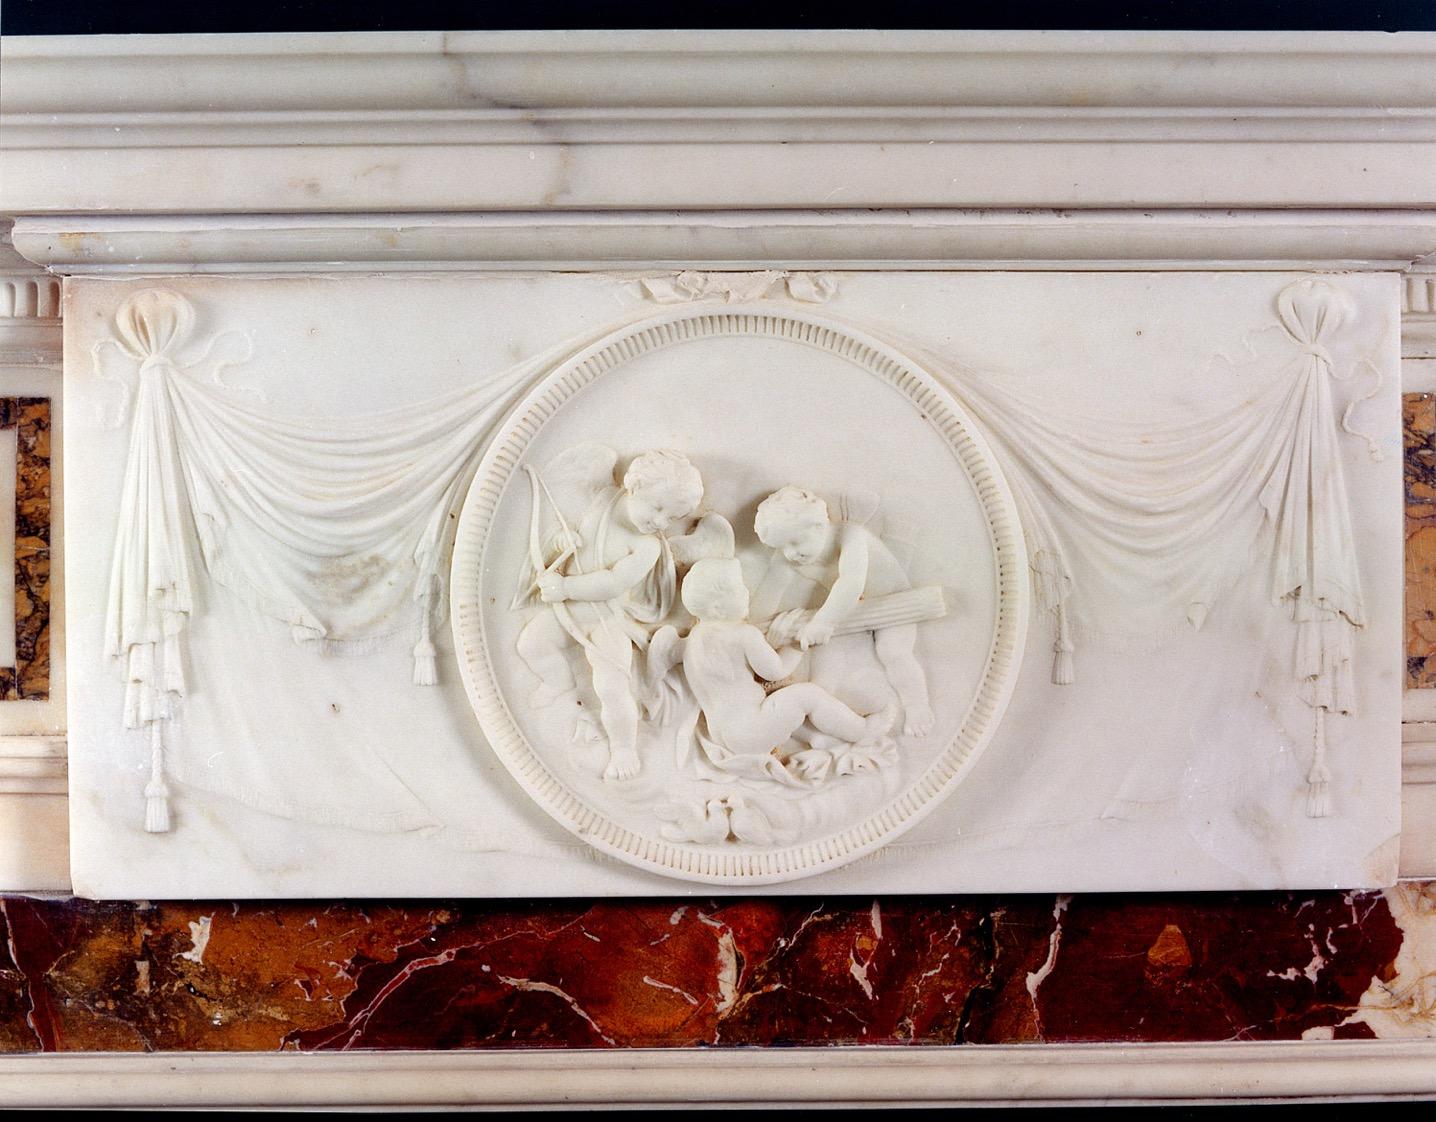 Englischer Marmorkamin aus dem 18. Jahrhundert mit Einlegearbeiten aus Siena-Marmor und griechischen Schlüsseln an den Seitenwänden, einer geschnitzten Mitteltafel mit Putten und Draperie sowie Pfosten mit konischen Säulen, die von ionischen